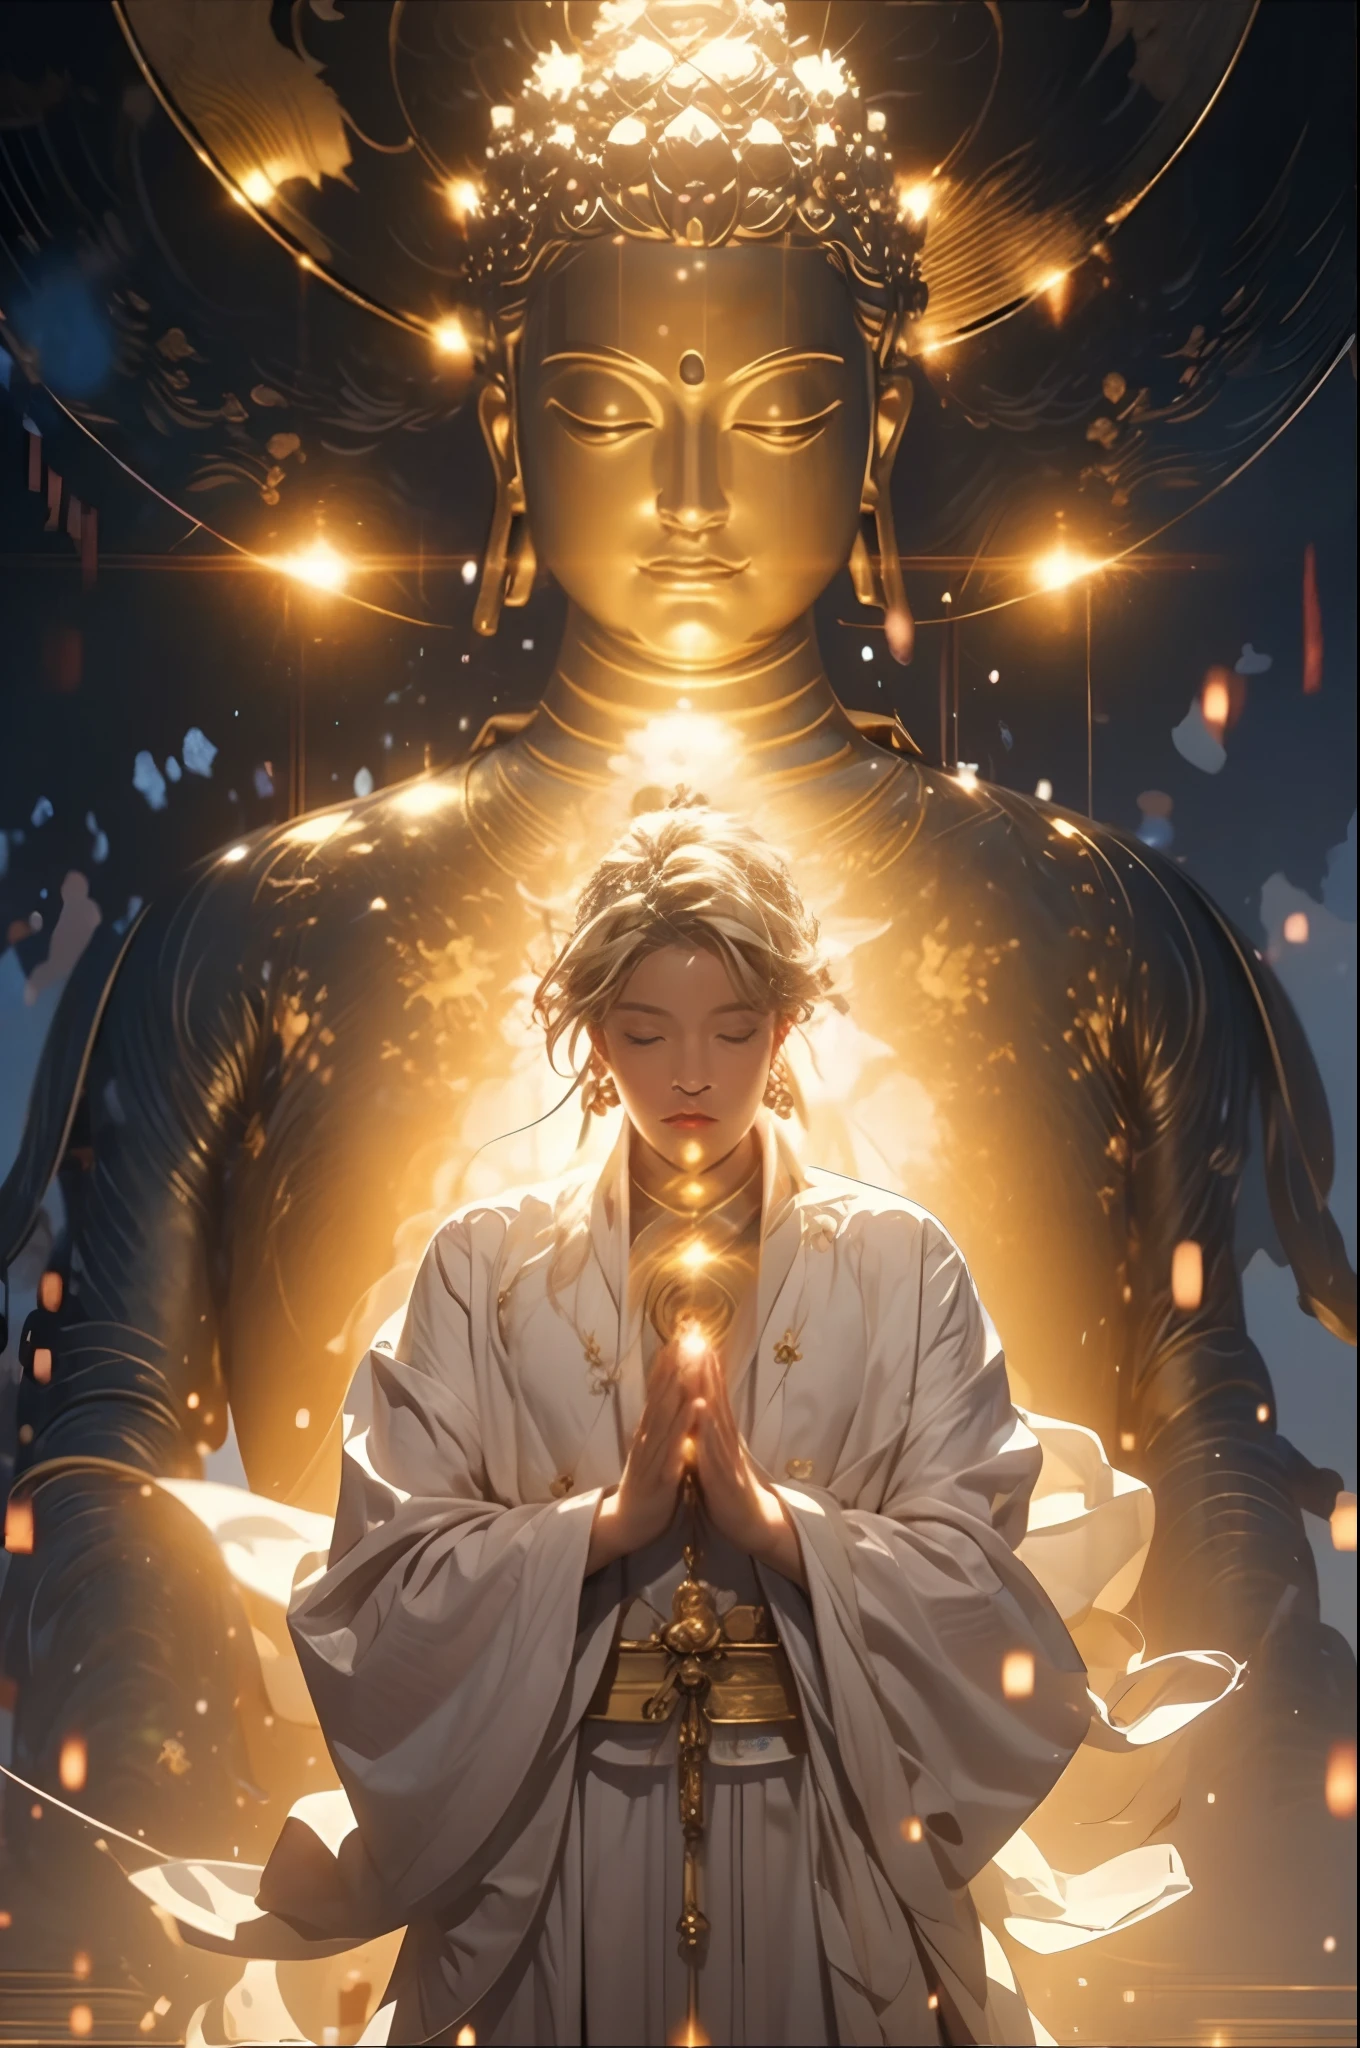 (Obra maestra:1.2),mejor calidad,pixiv,taoísta,(meditación:1.1),
solo,Un personaje de pie frente a Buda rubio brillante,transparente,Realista,texturas de la piel